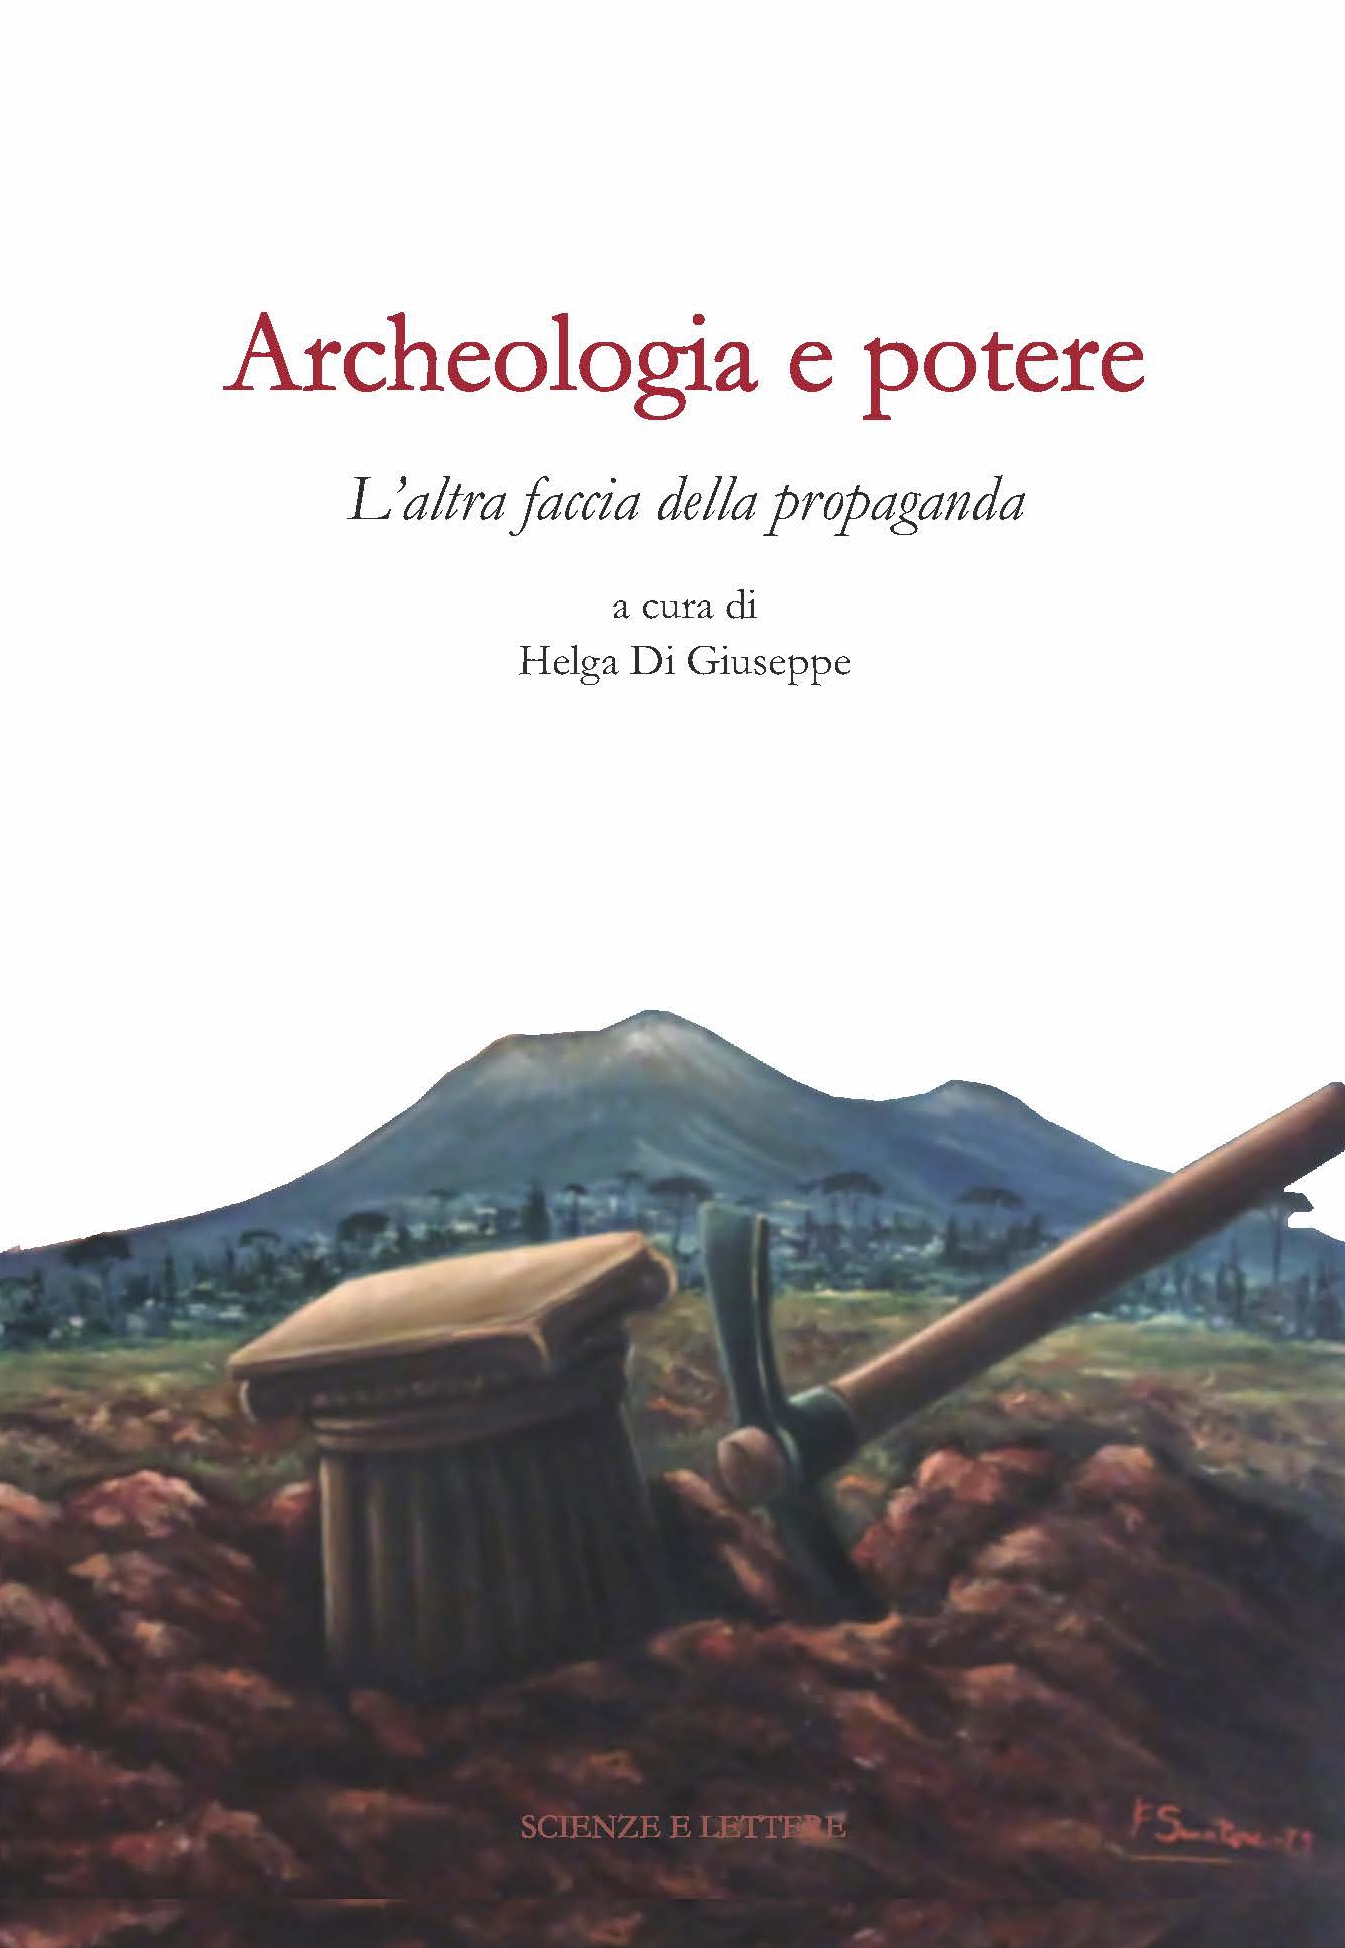 Archeologia e potere. L'altra faccia della propaganda<br/>
Dialoghi intorno alla catastrofe pompeiana (2014-2020 d.C.) - Una scuola per il patrimonio: questioni di metodo 4 